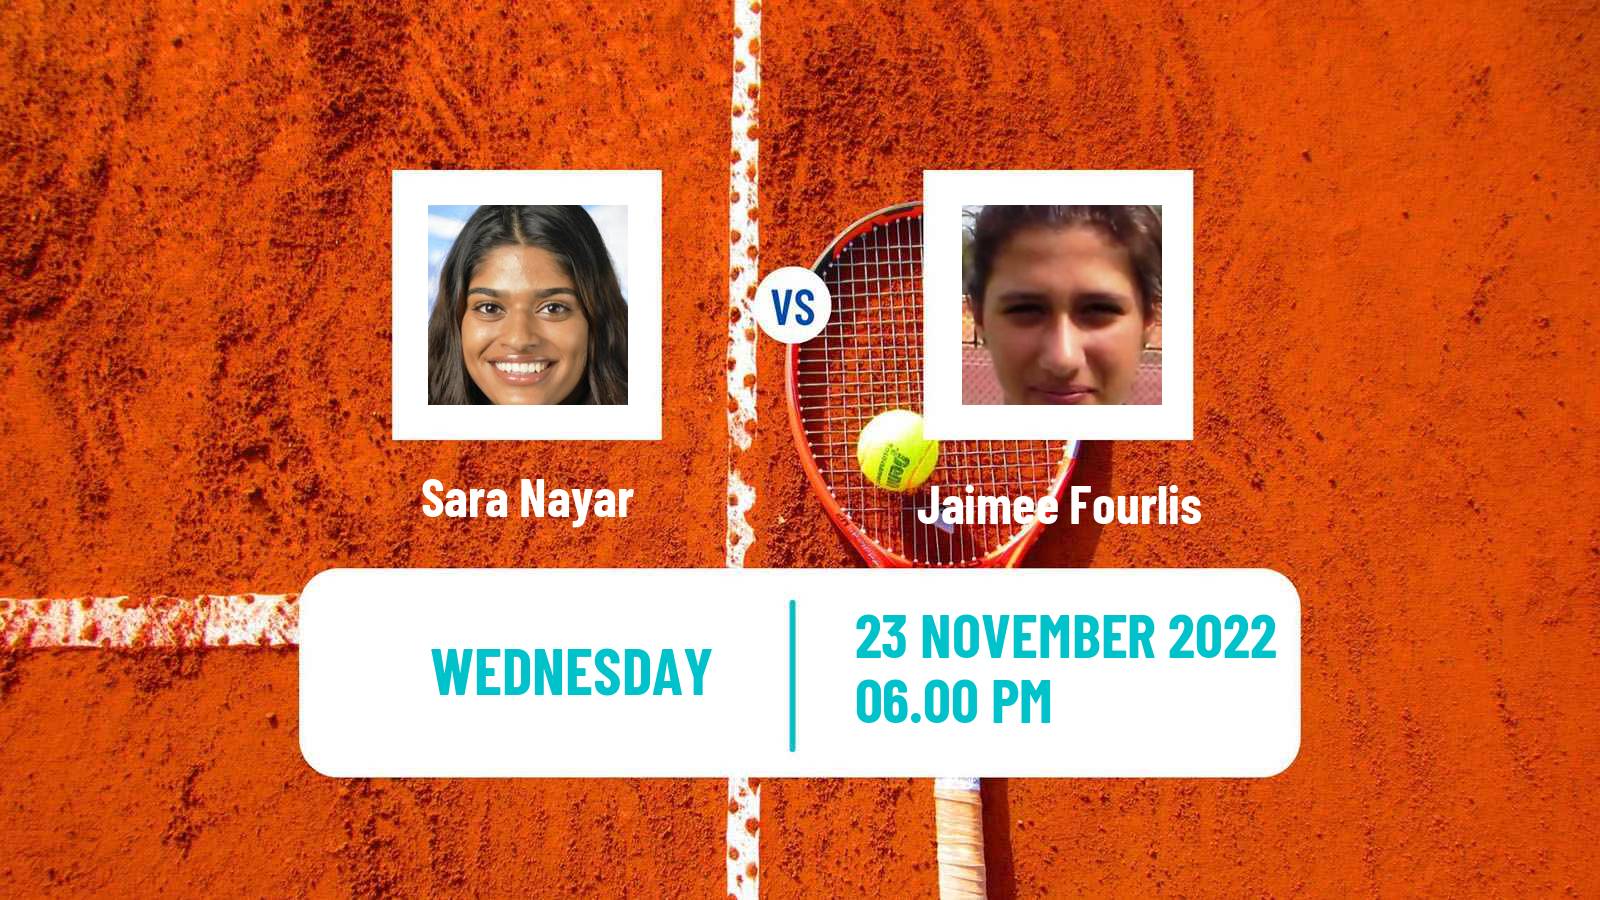 Tennis ITF Tournaments Sara Nayar - Jaimee Fourlis